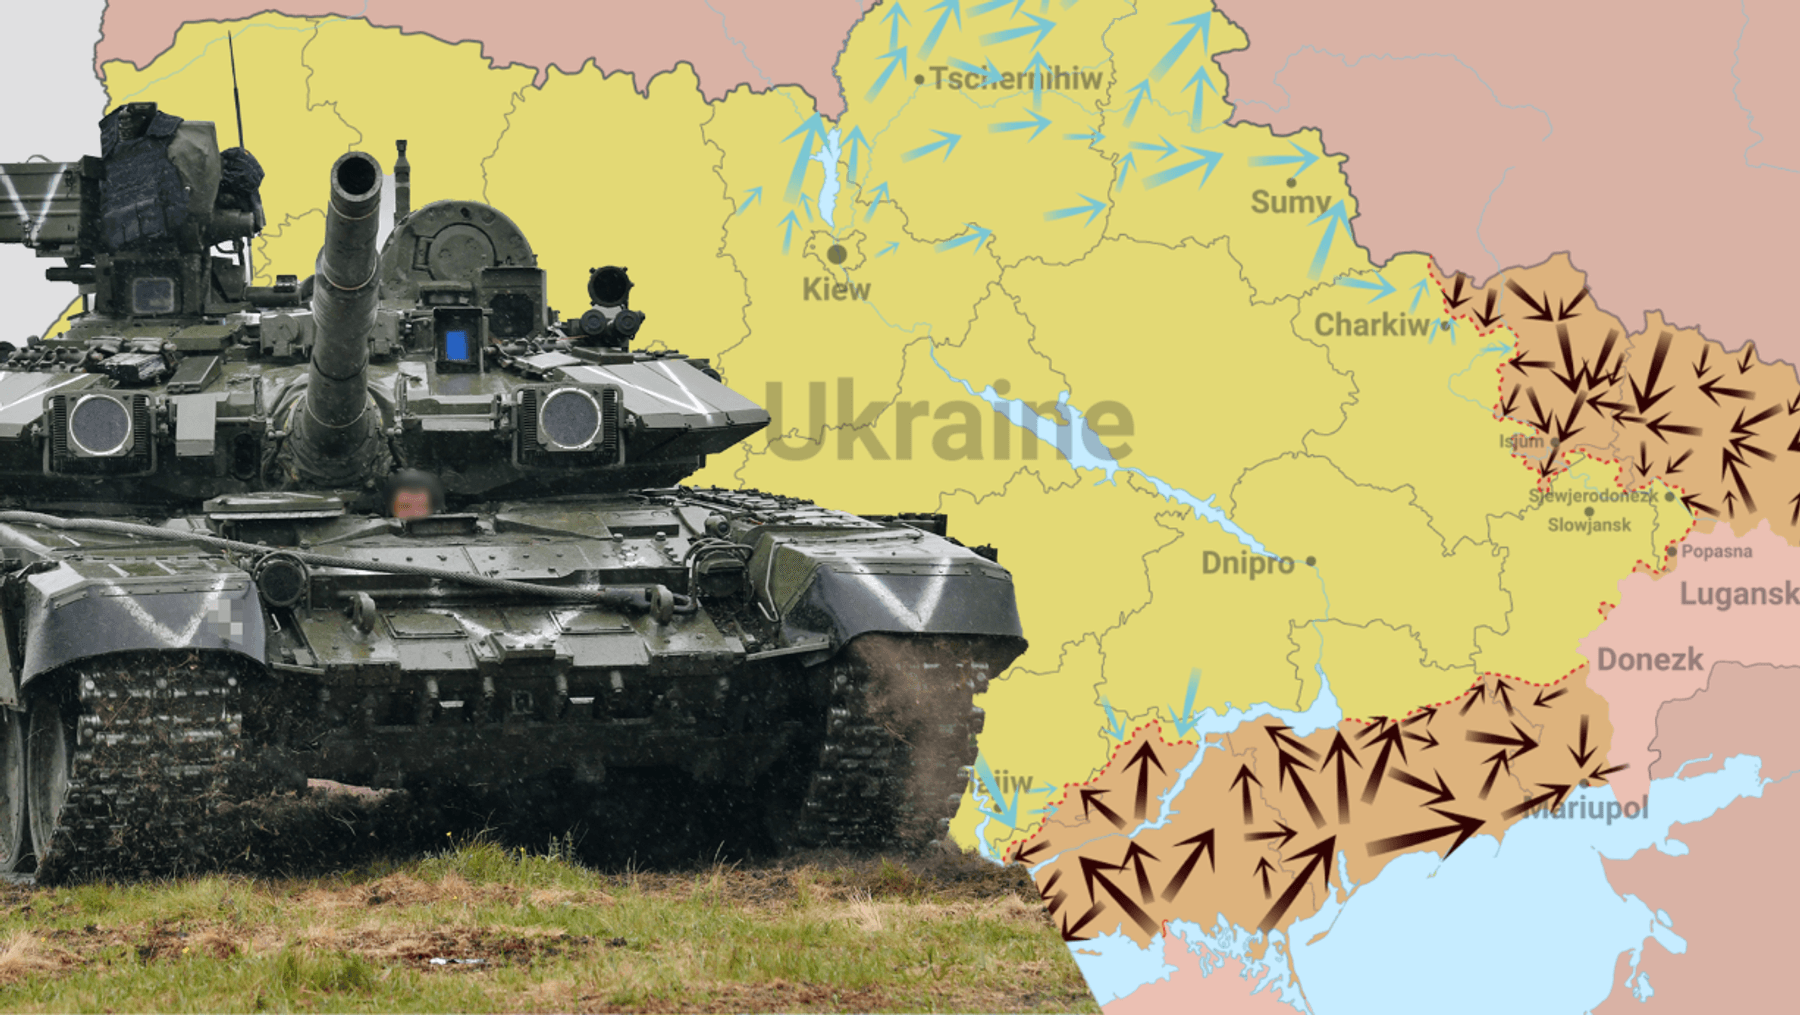 + Notizie della guerra in Ucraina + Kiev sospende i negoziati – in attesa di armi